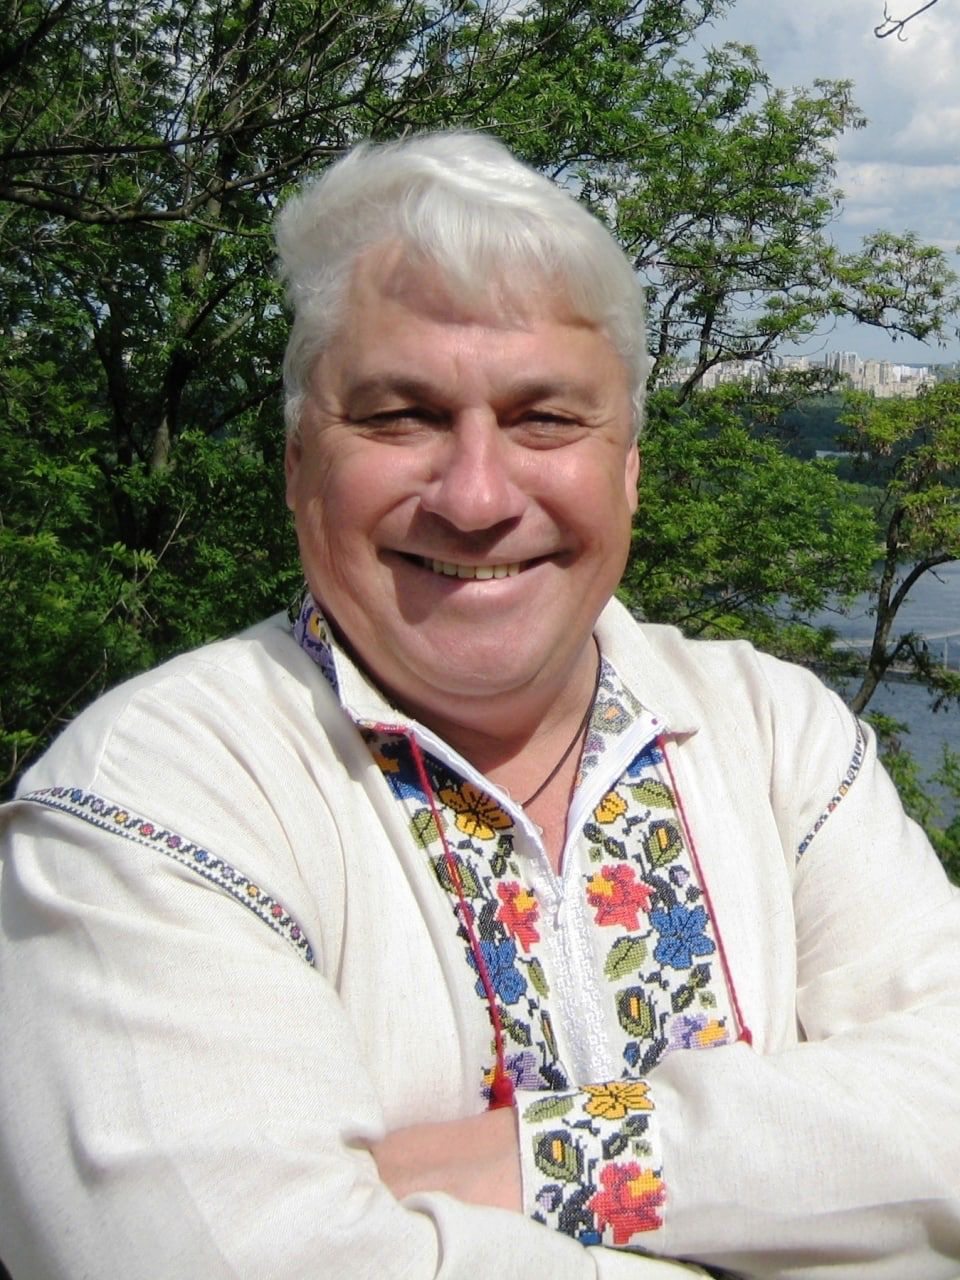 Володимир Онищенко